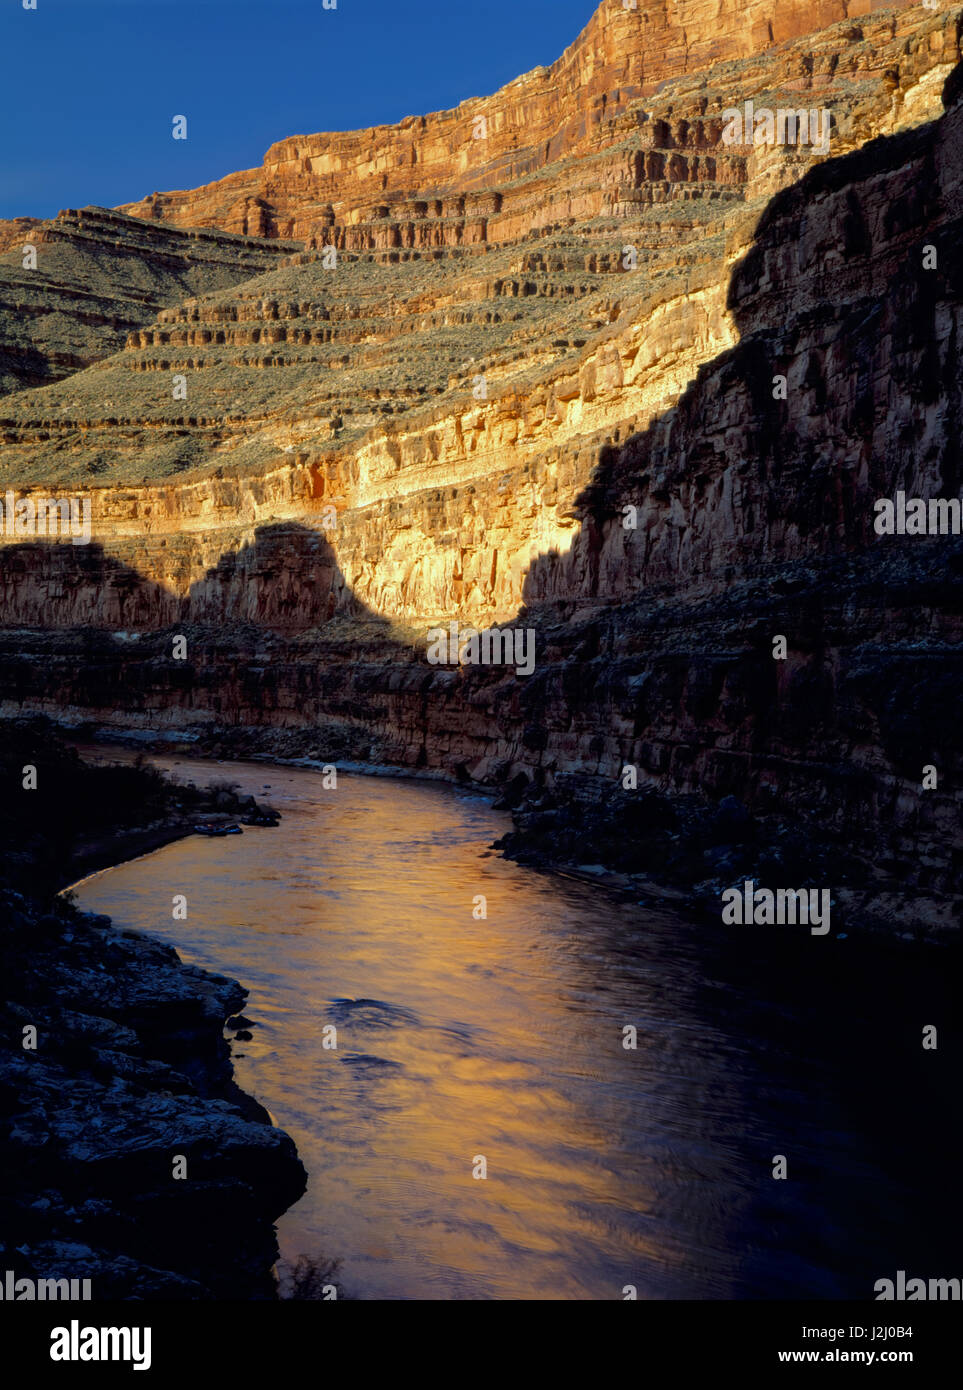 Glen Canyon National Recreation sont, dans l'Utah. USA. Cliff compte au lever du soleil le long de la Rivière San Juan. Tailles disponibles (grand format) Banque D'Images